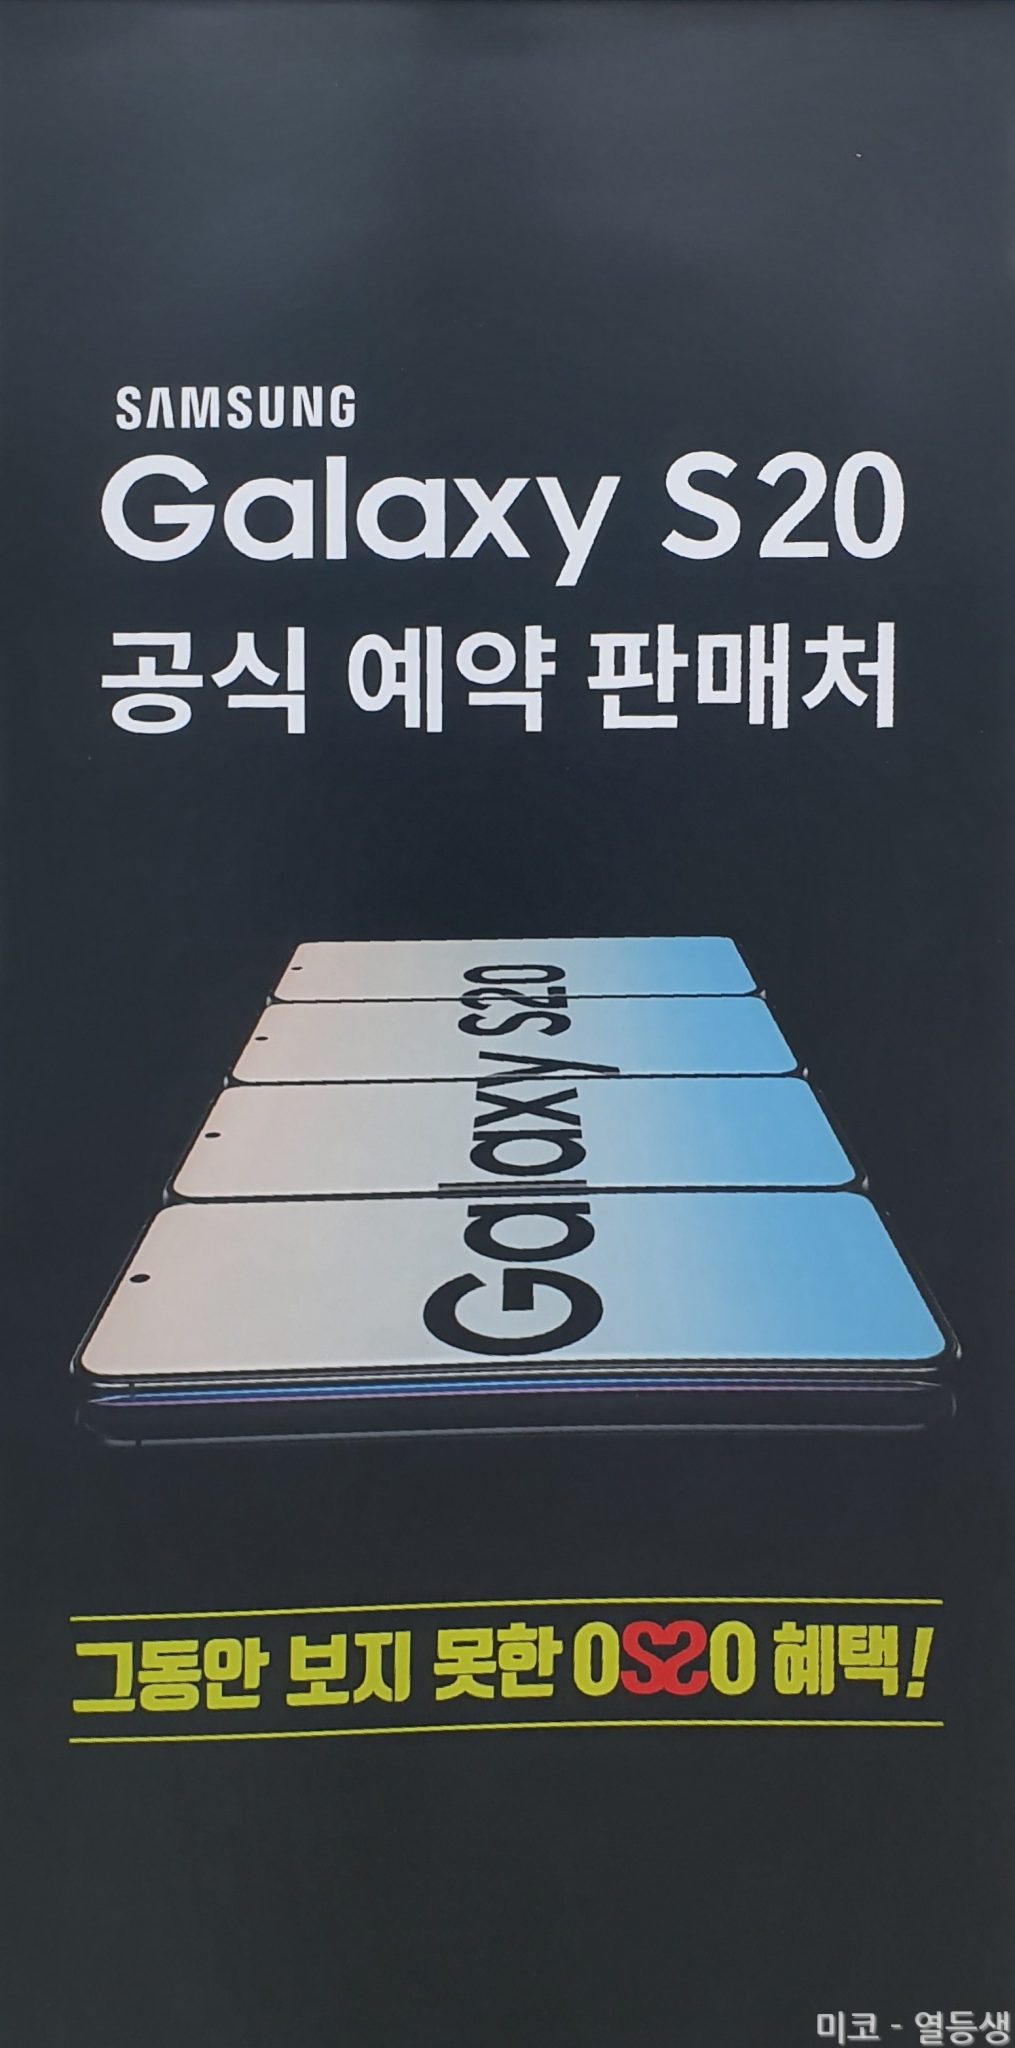 Plakáton a Galaxy S20